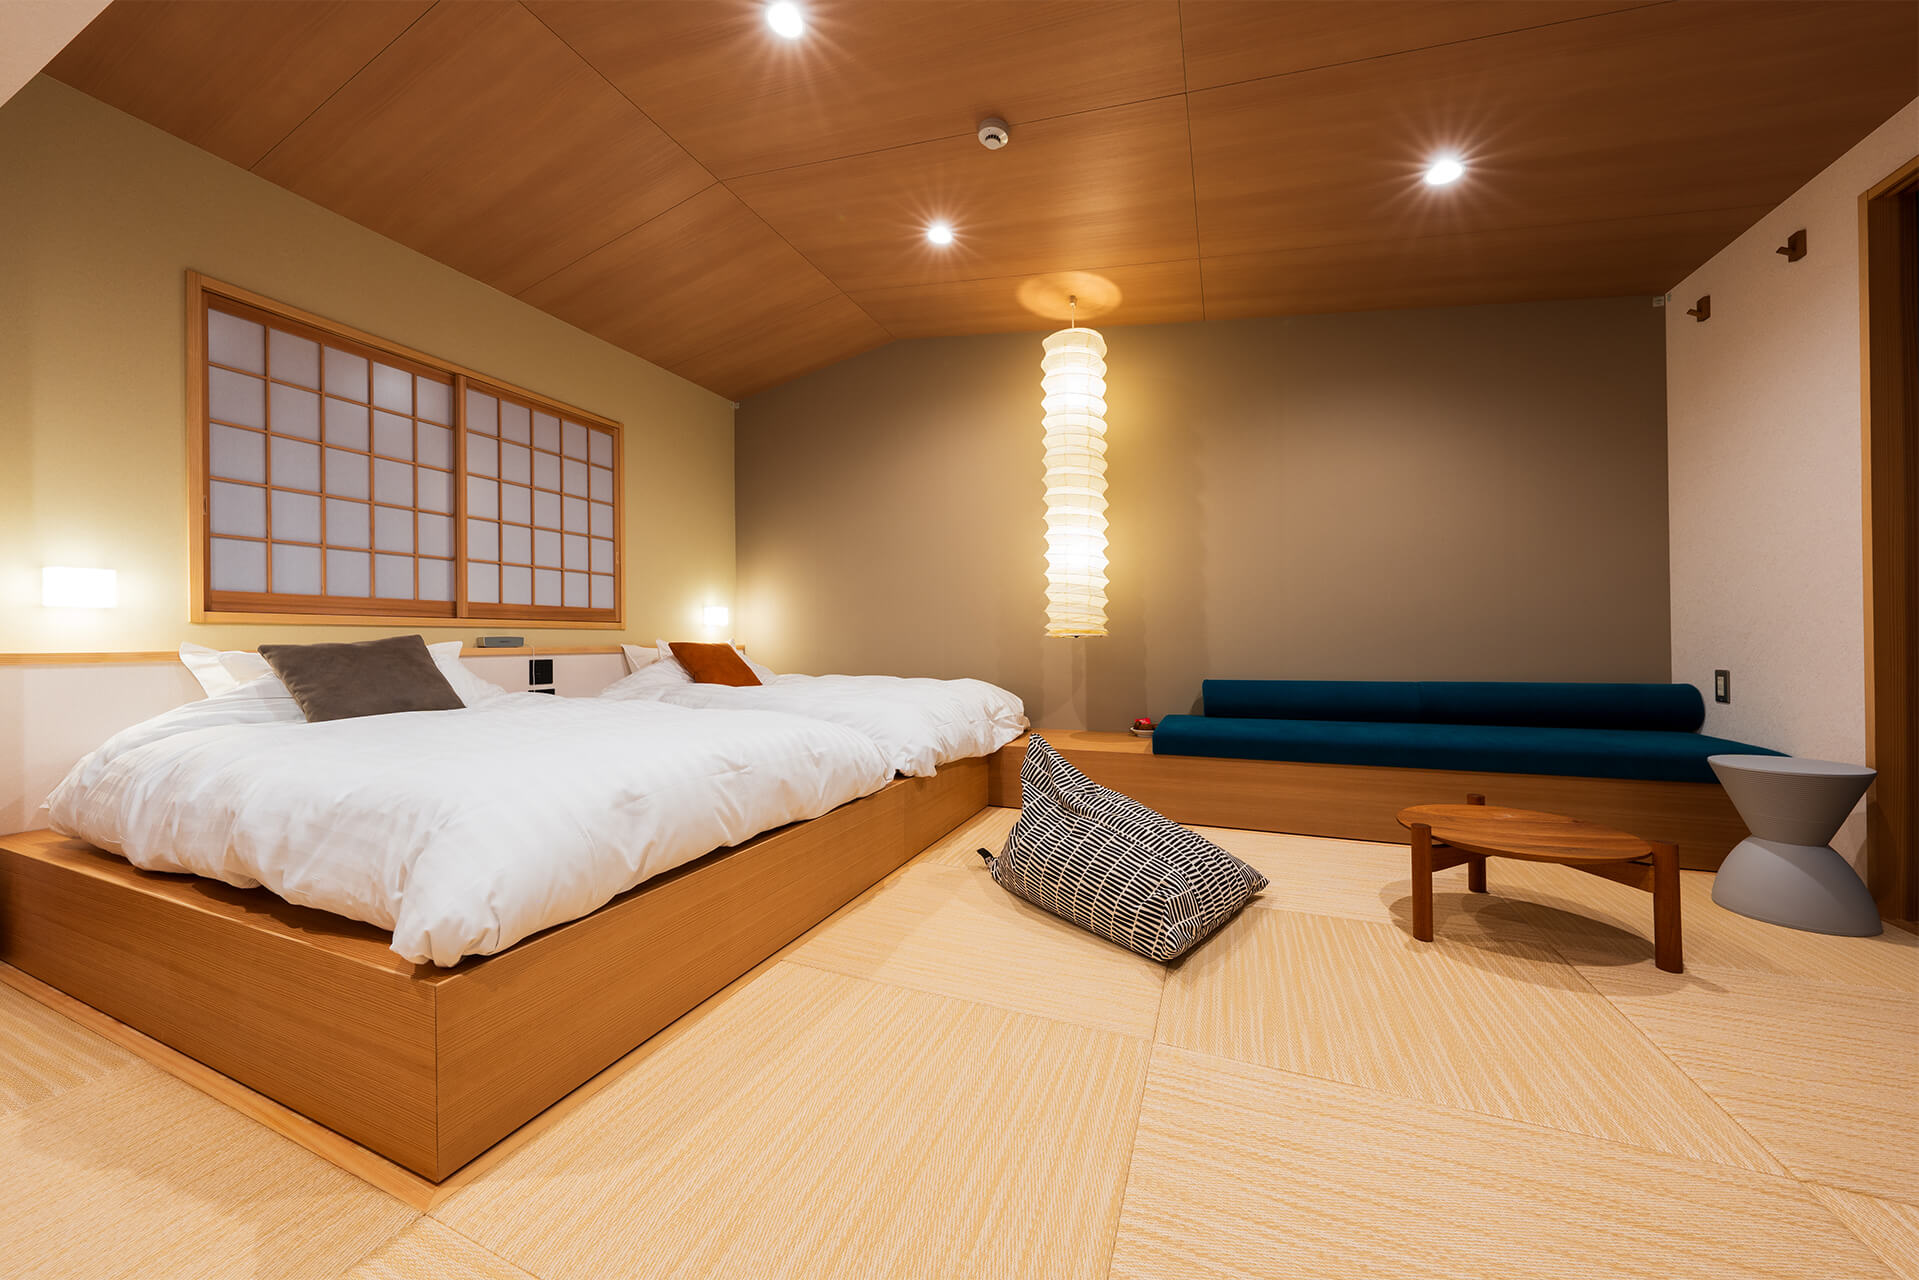 寧 -NEI- 広めのテラスのある和空間の露天風呂付客室